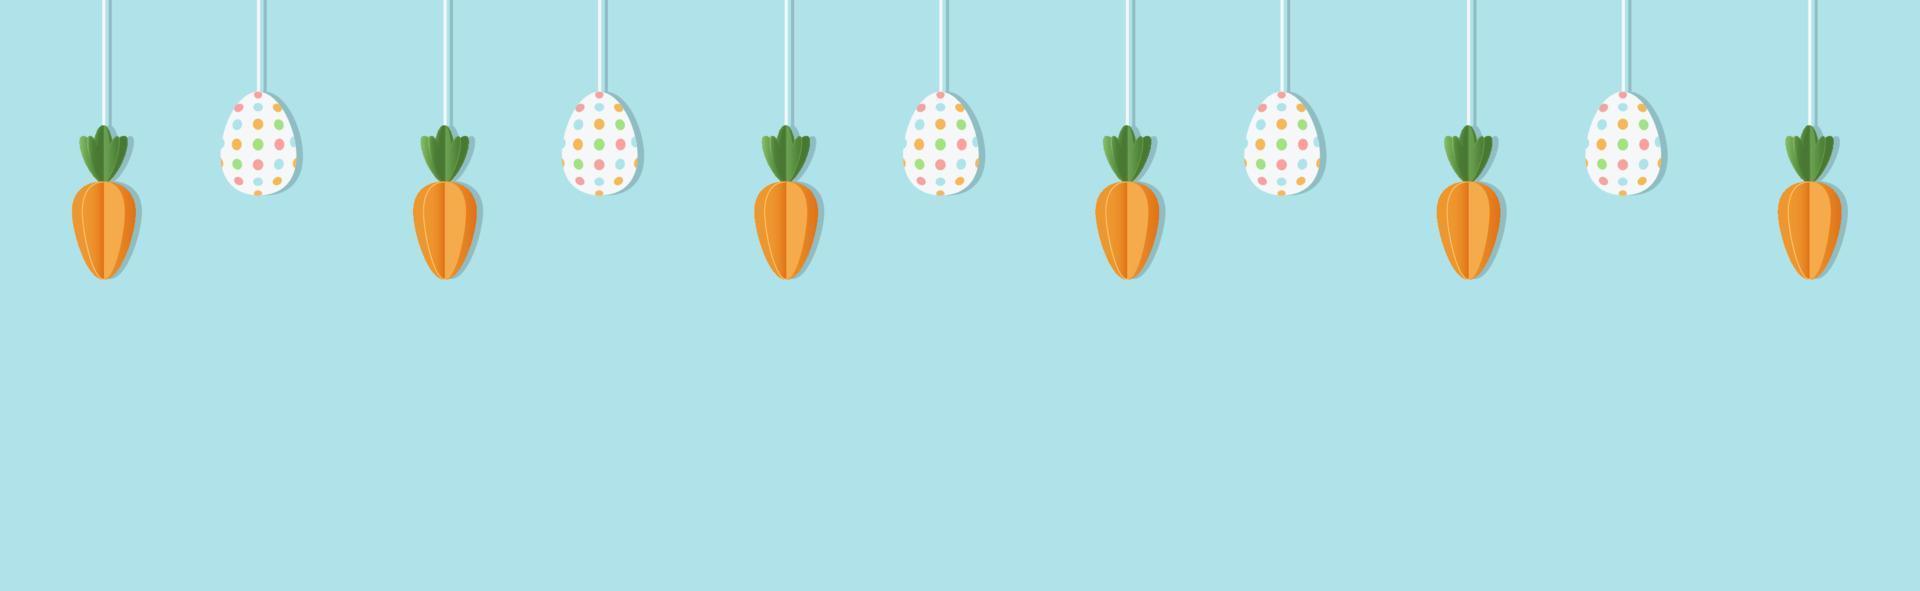 Pascua de Resurrección antecedentes con un guirnalda de zanahorias y huevos. vector ilustración.